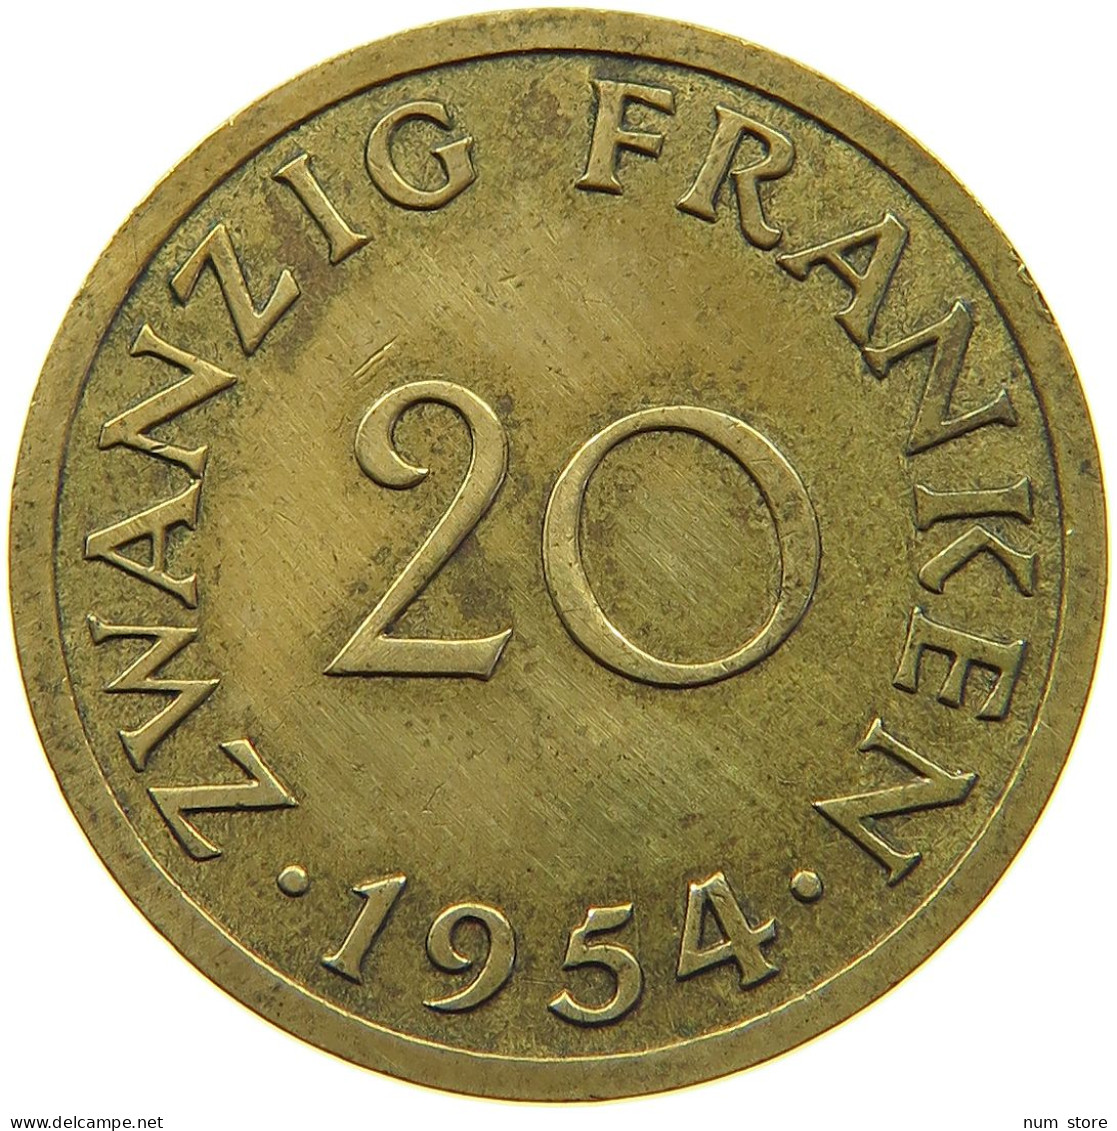 GERMANY 20 FRANKEN 1954 SAARLAND #c055 0243 - 20 Franchi